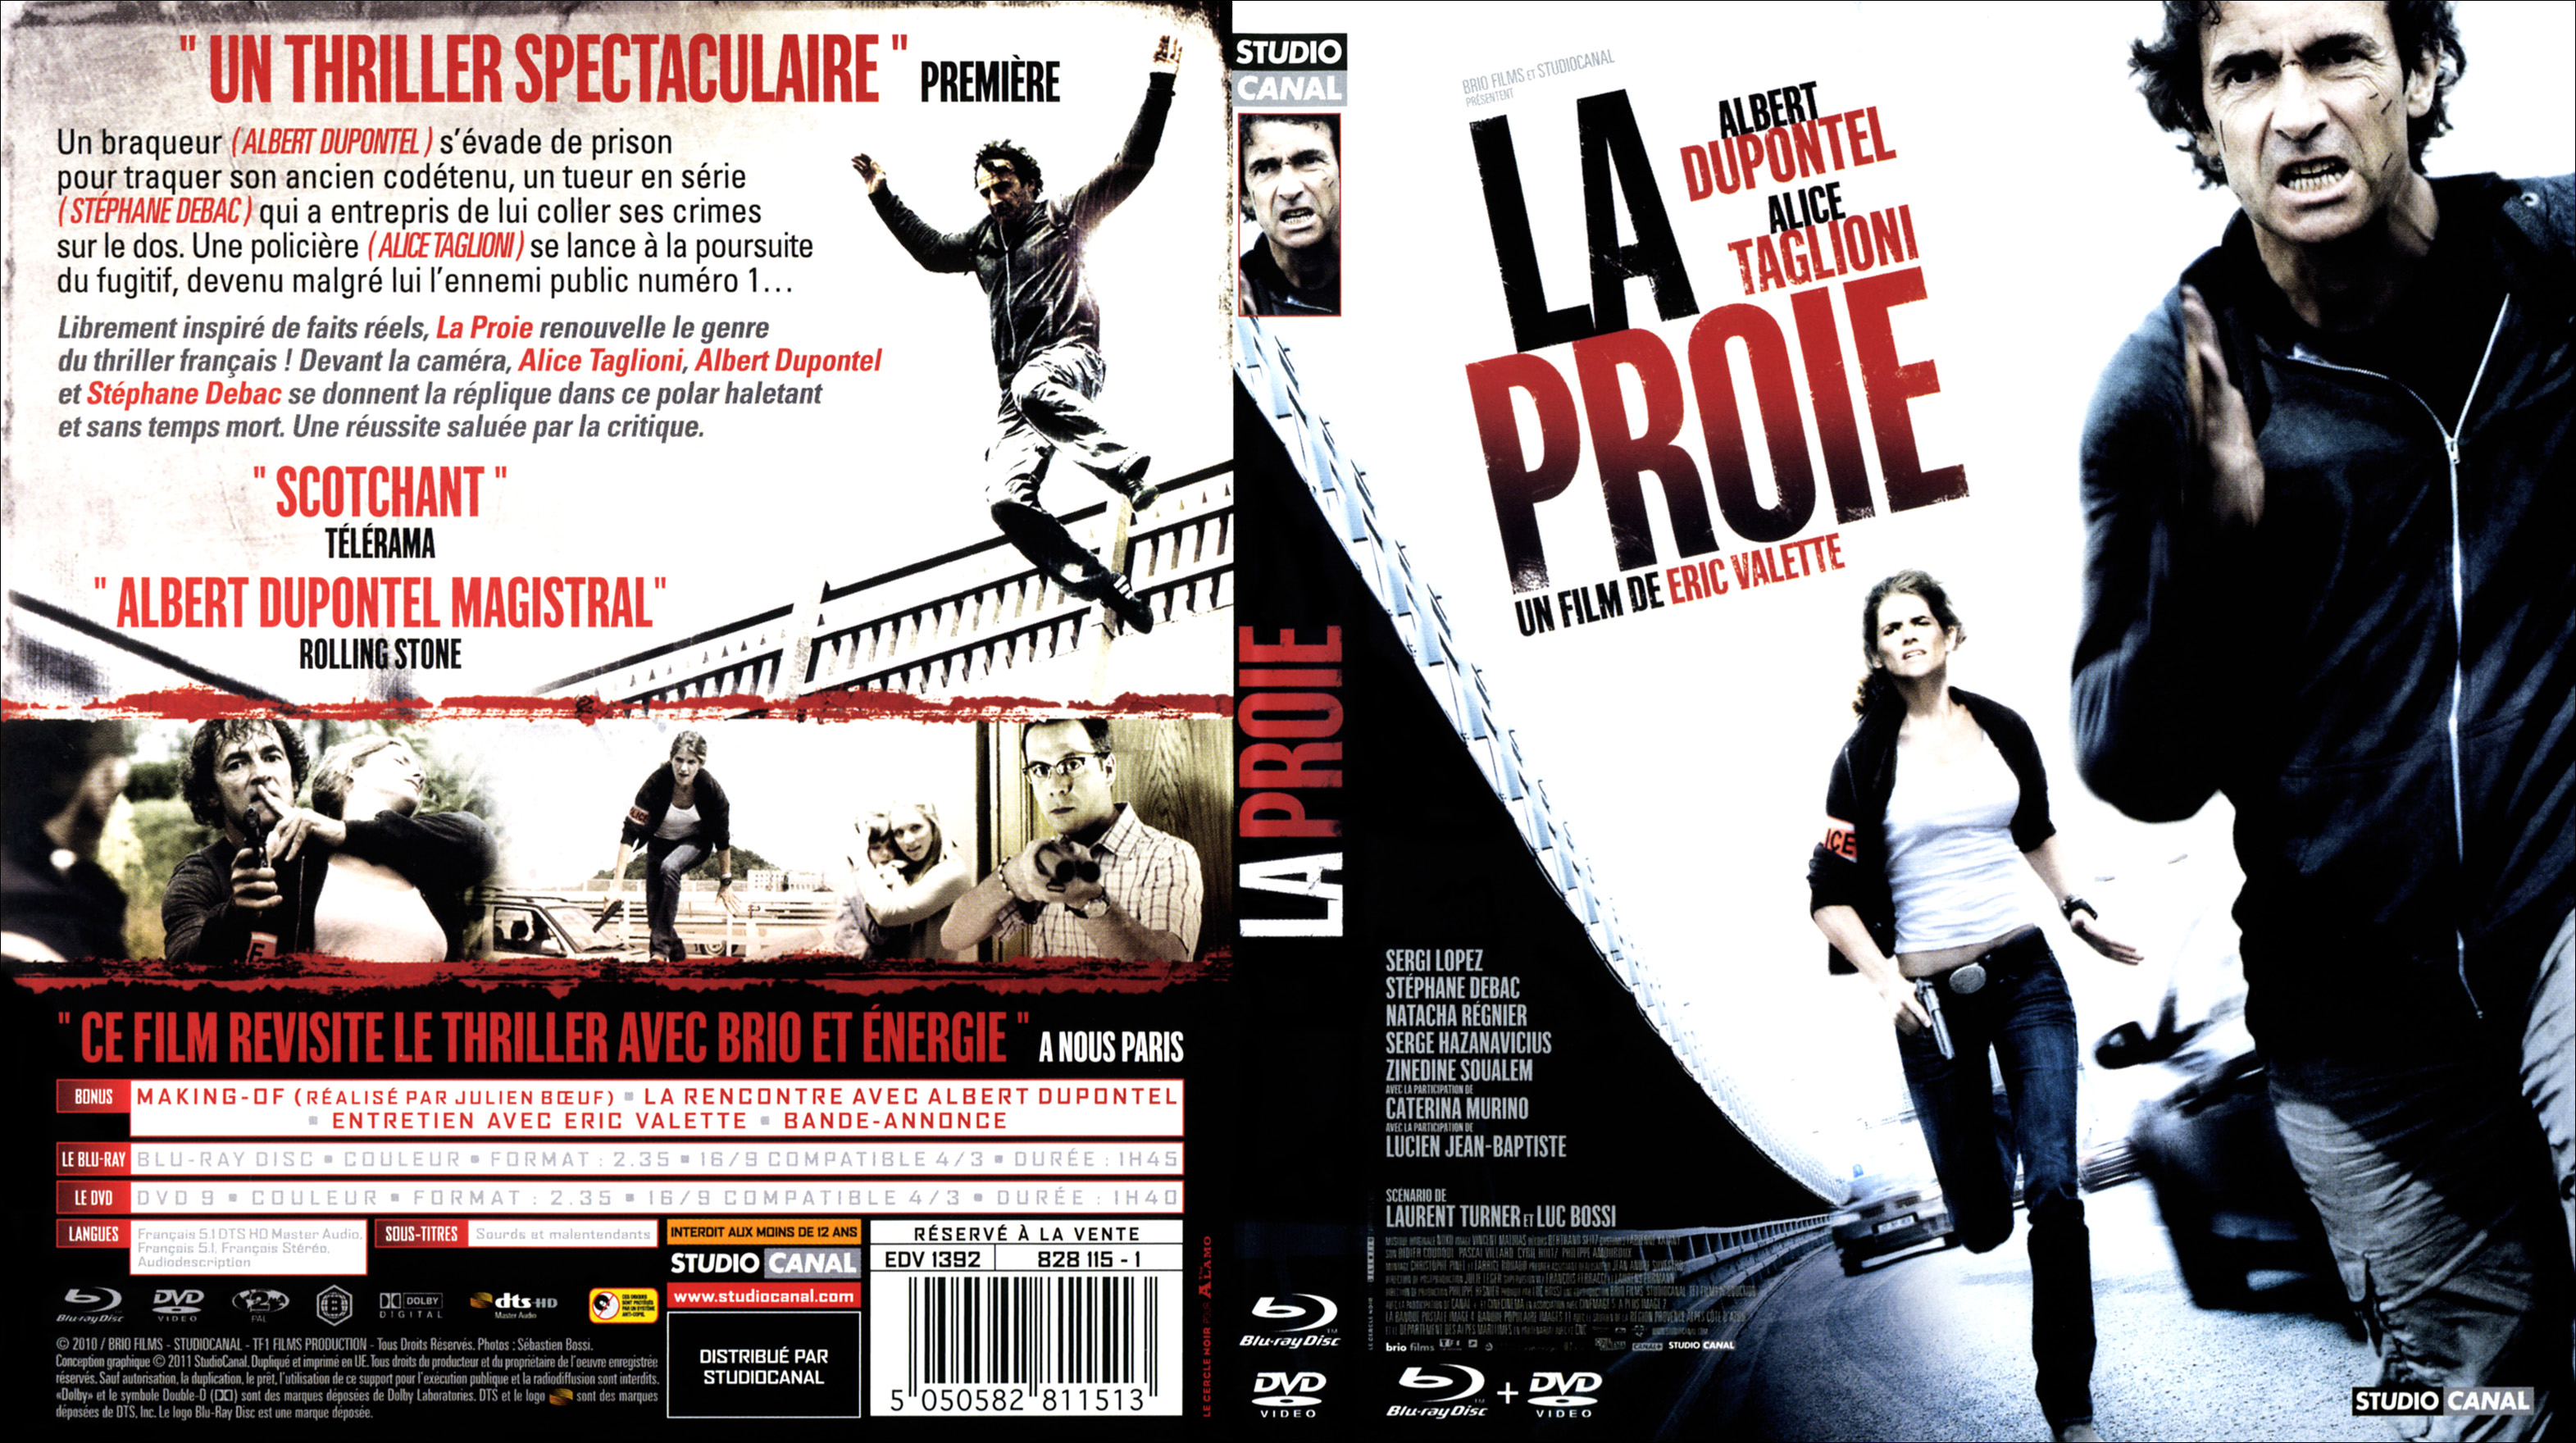 Jaquette DVD La proie (BLU-RAY)